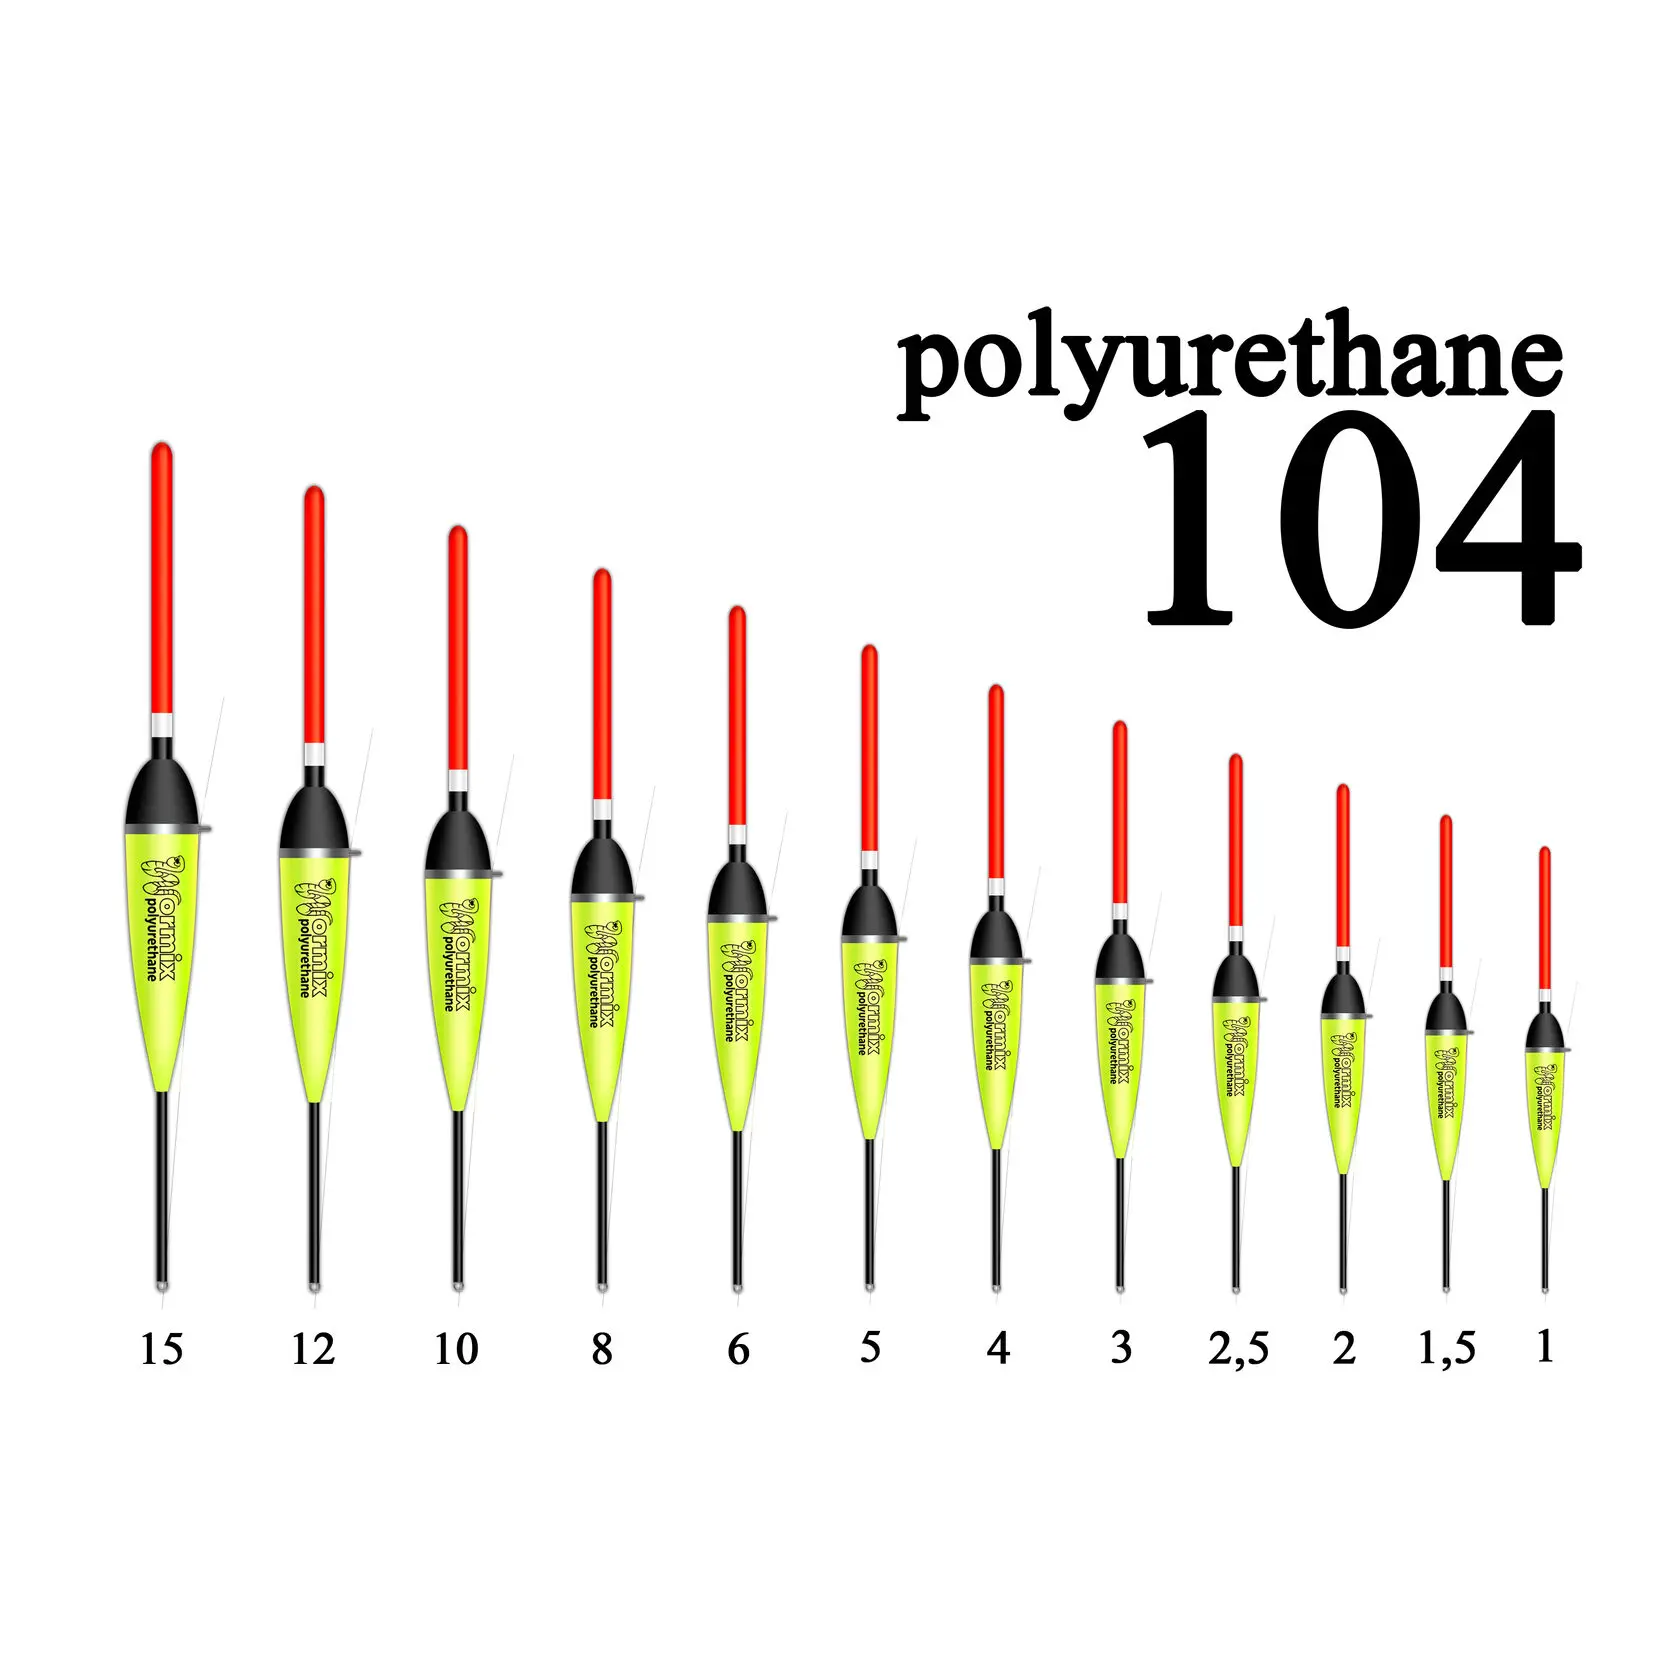 Поплавок wormix для рыбалки из полиуретана 104 -1-1.5- 2-2.5--3-4-5-8-10-12-15 гр. набор 5 штук. |